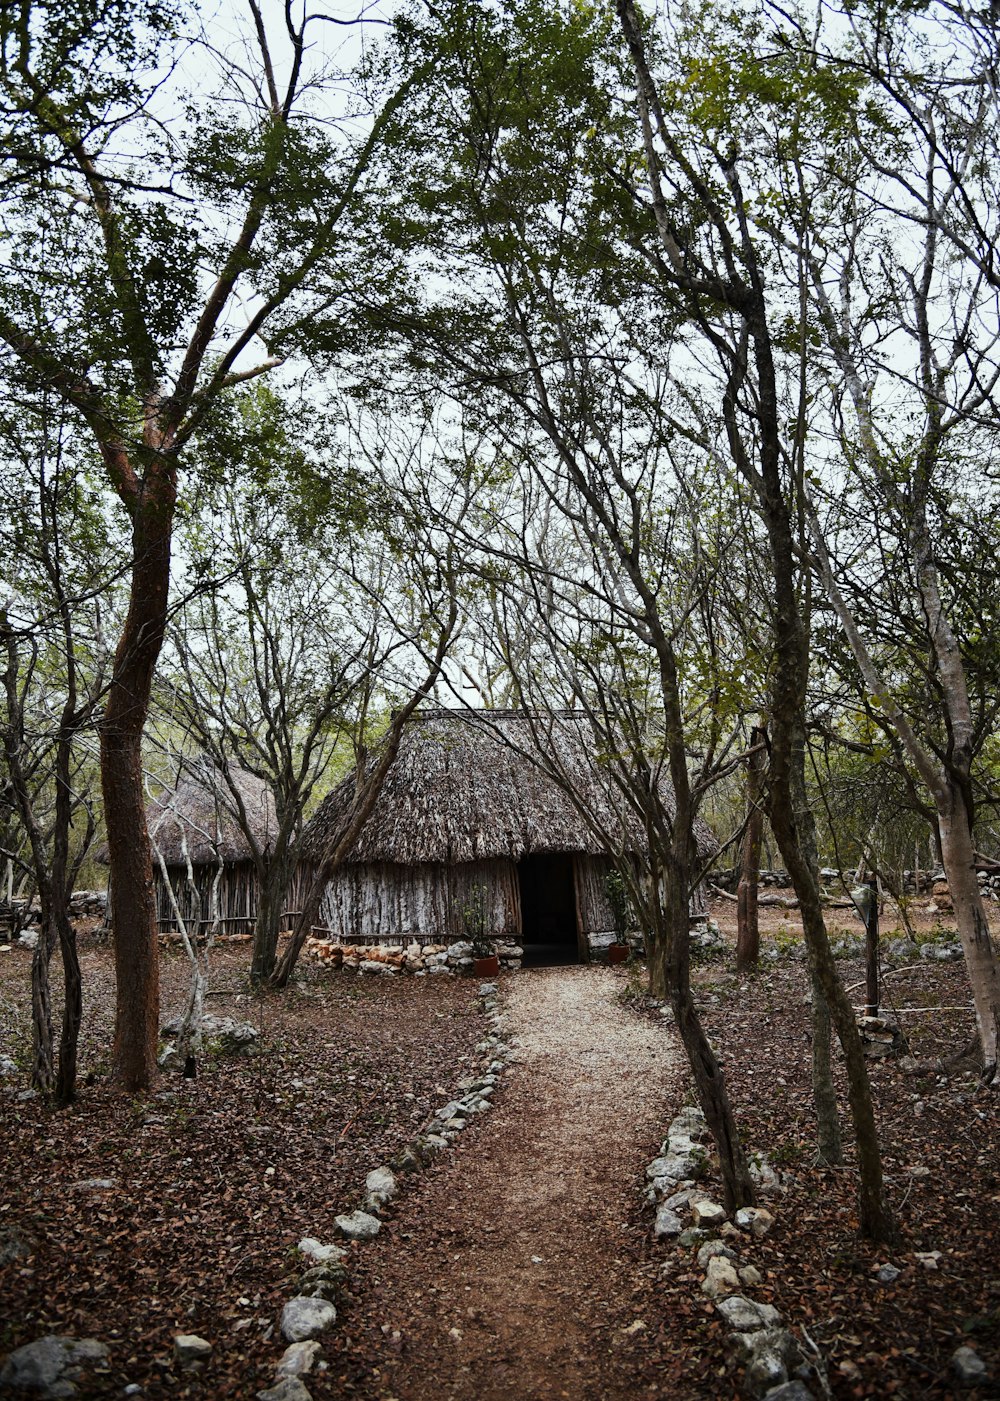 bamboo hut near trees